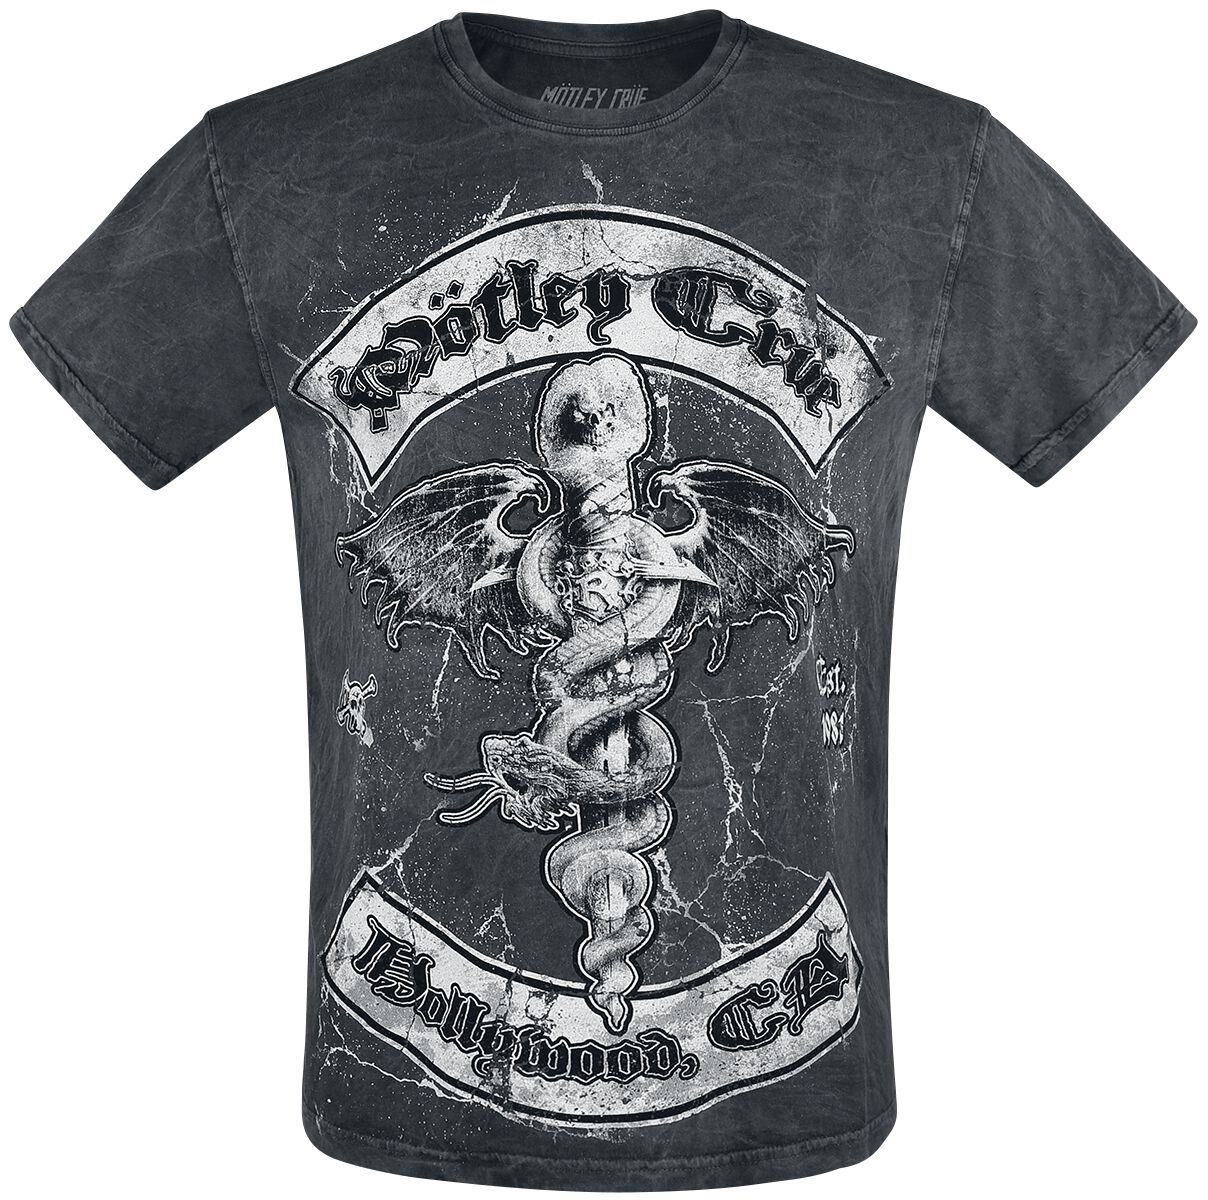 Mötley Crüe T-Shirt - Feel Good - S bis XXL - für Männer - Größe S - grau/weiß  - Lizenziertes Merchandise!